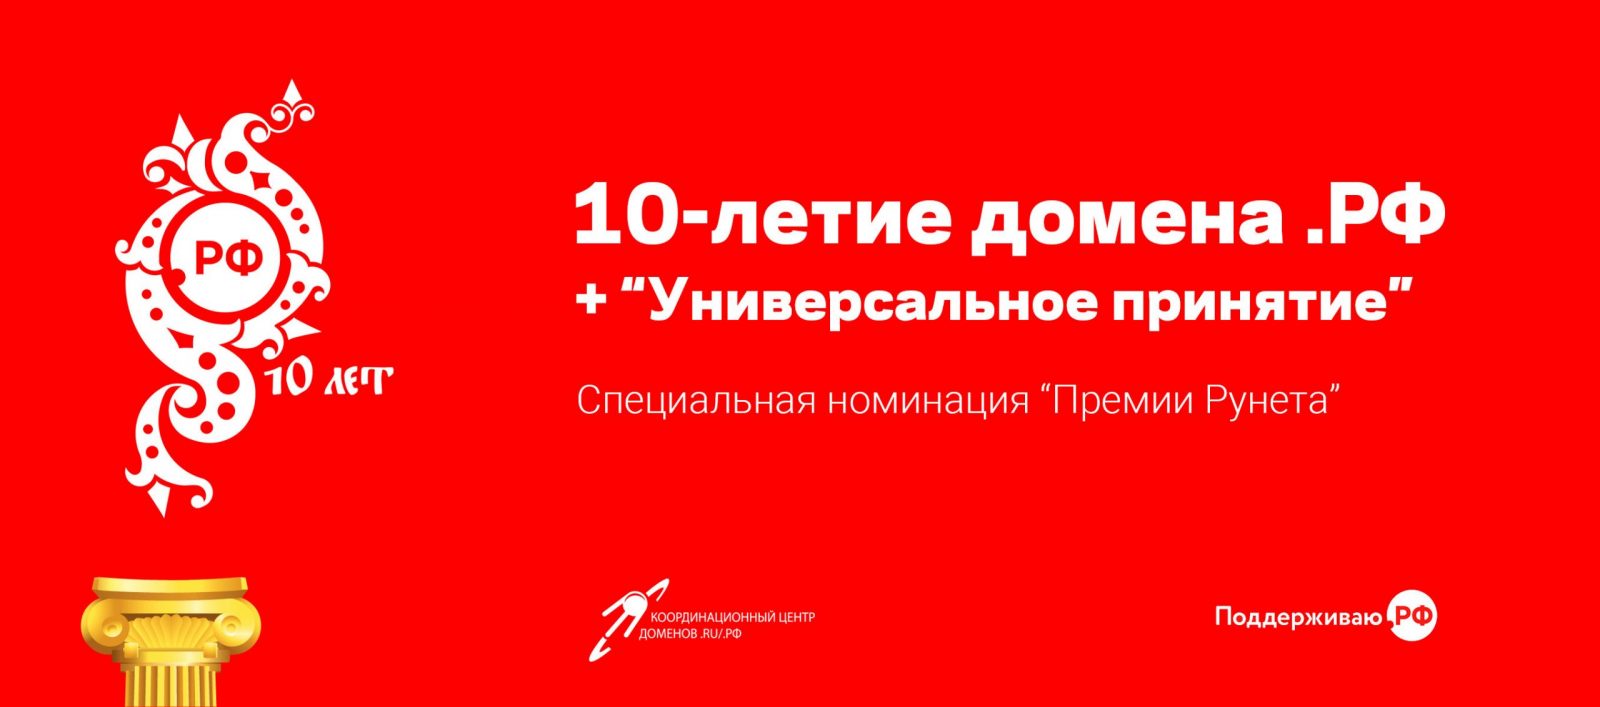 Координационный центр российских доменов и РАЭК учредили новую номинацию Премии Рунета